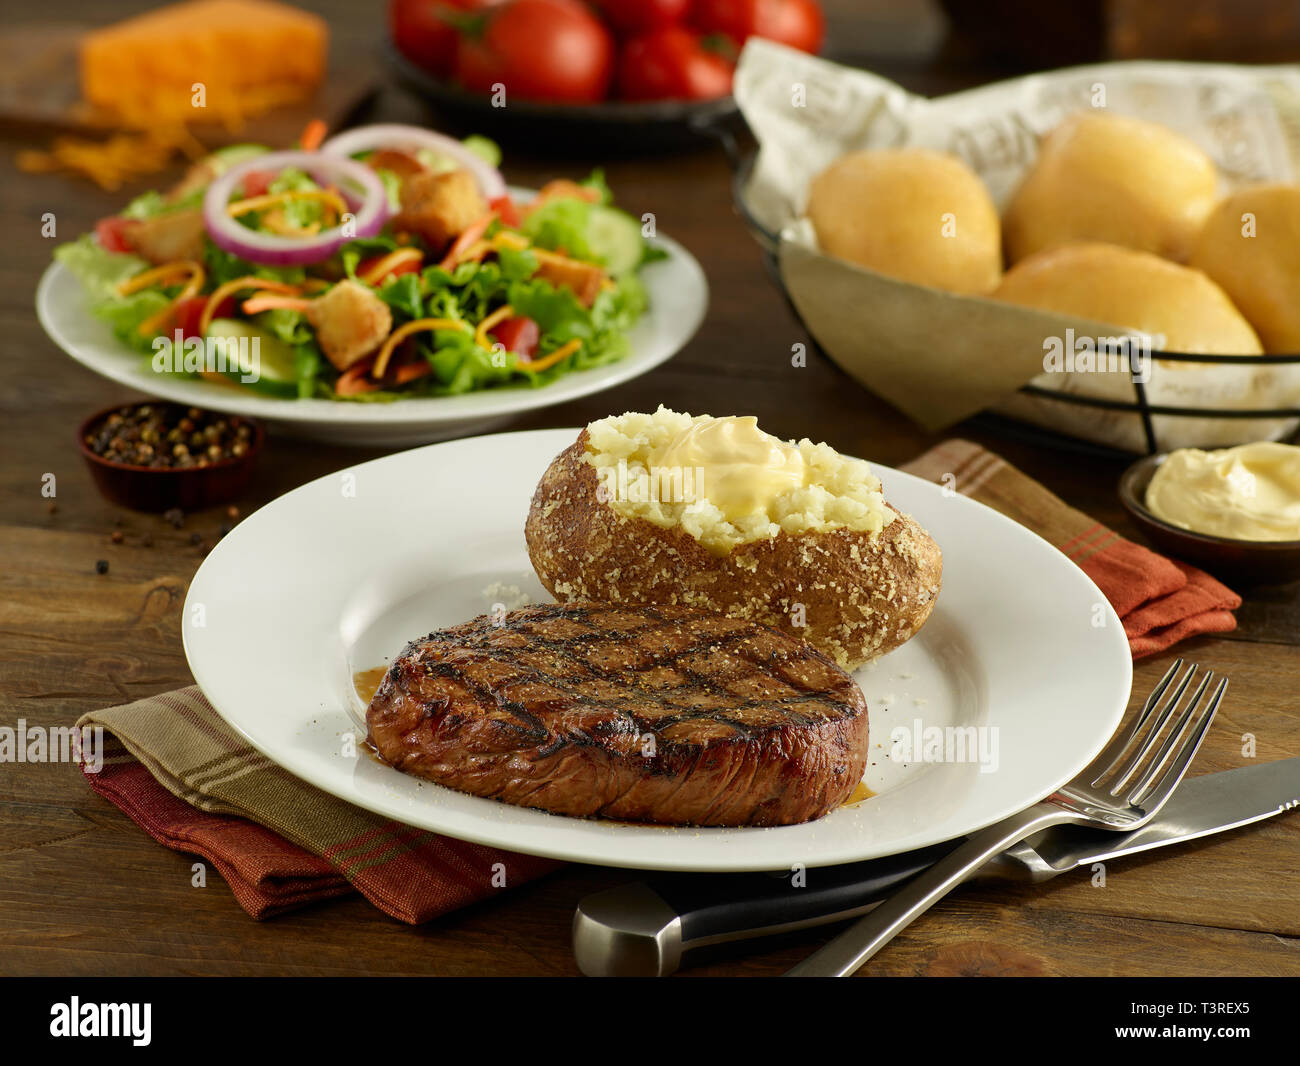 Steak de surlonge avec pomme de terre au four, salade, et petits pains Banque D'Images